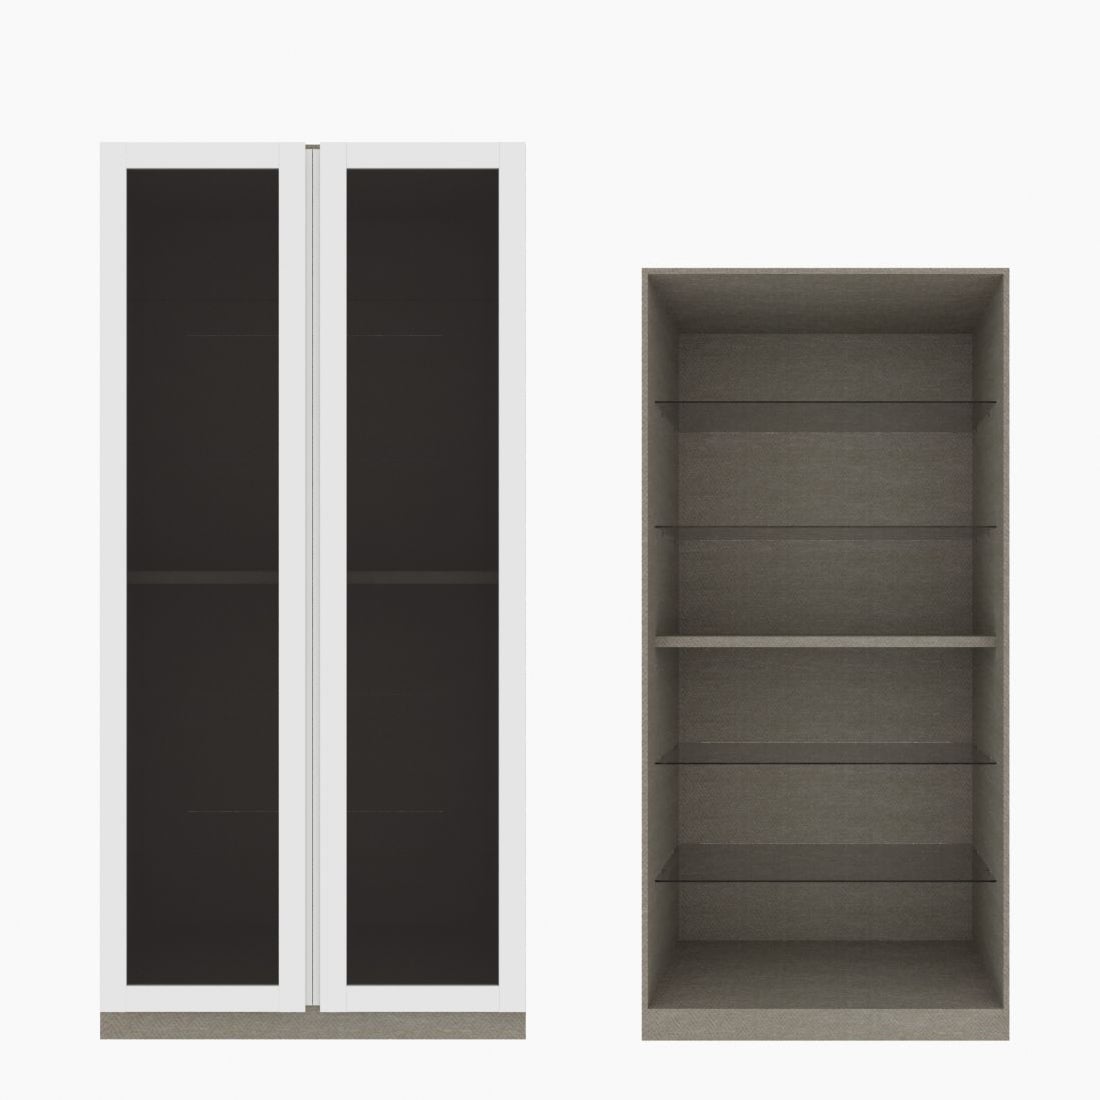 ตู้โชว์ชั้นกระจก OP-H ขนาด 100 ซม. รุ่น Blox สีขาว&กระจกชาดำ01